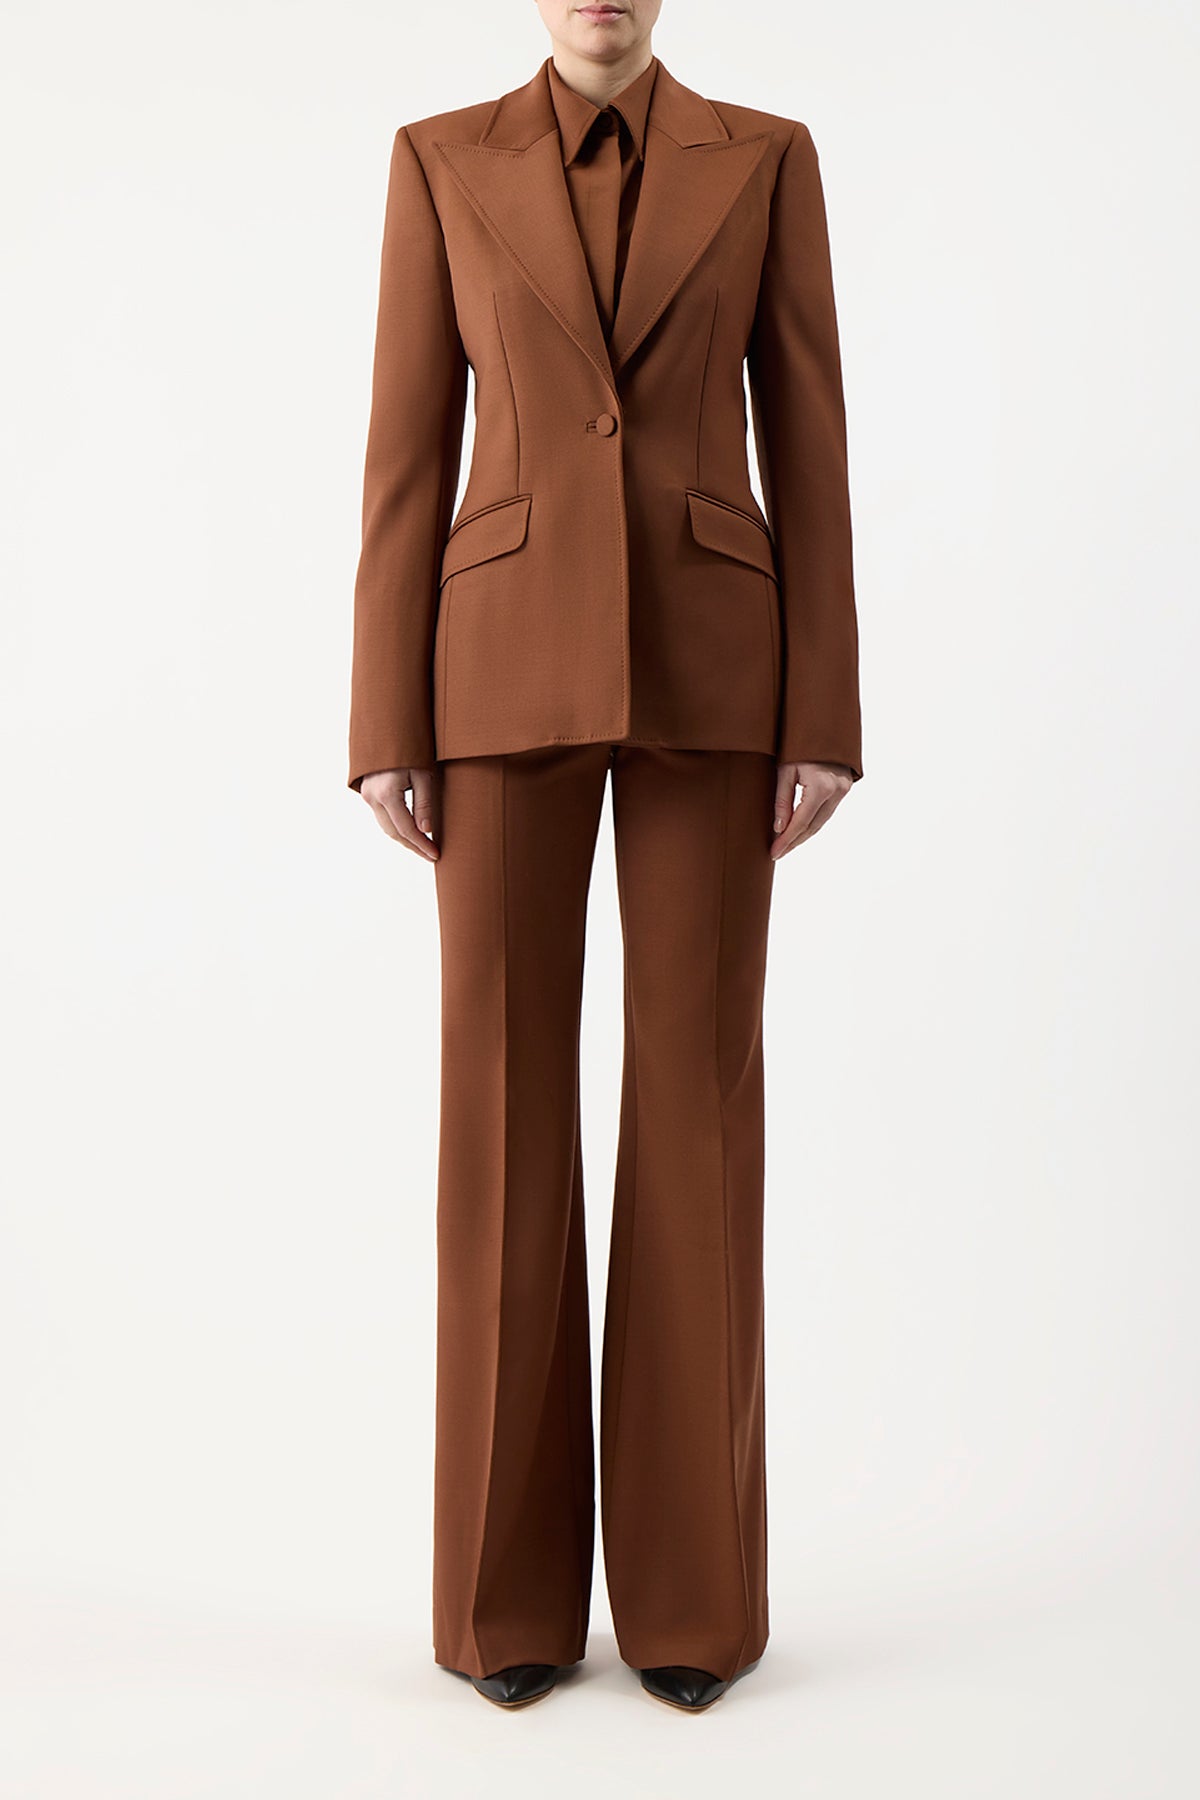 Leiva Blazer in Cognac Sportswear Wool